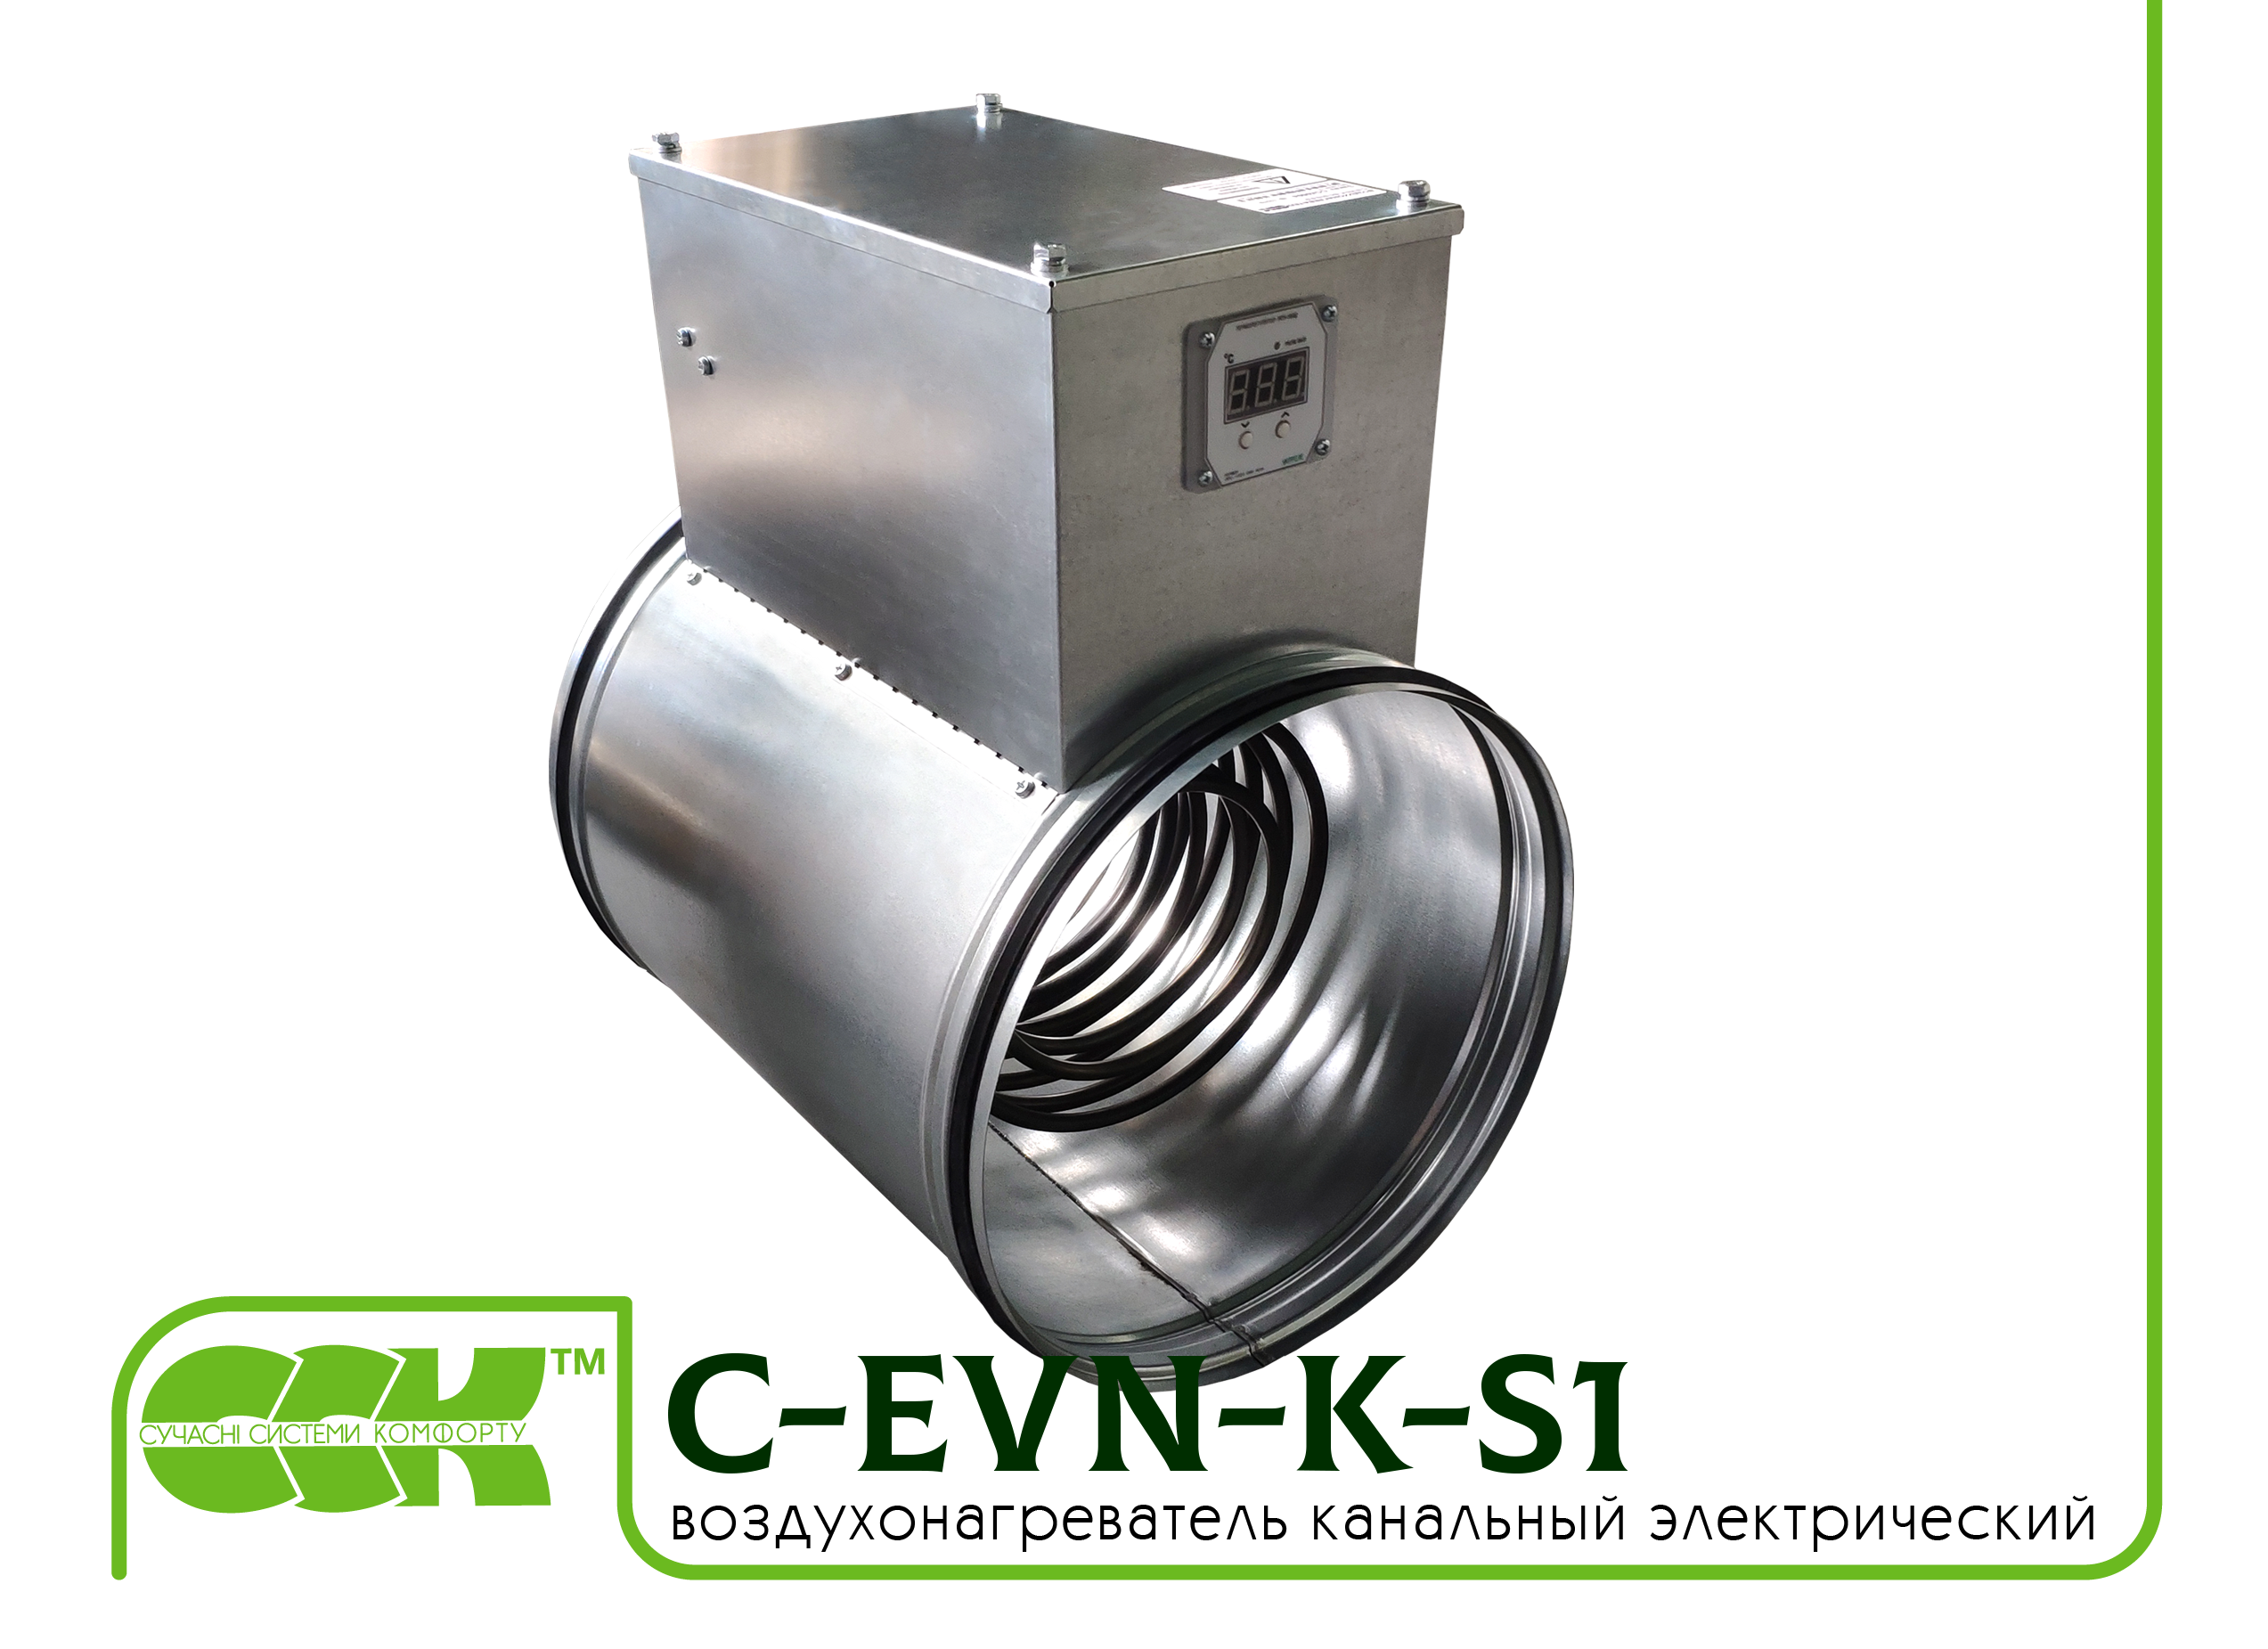 Воздухонагреватель канальный электрический для круглых каналов C-EVN-K-S1-150-4,5